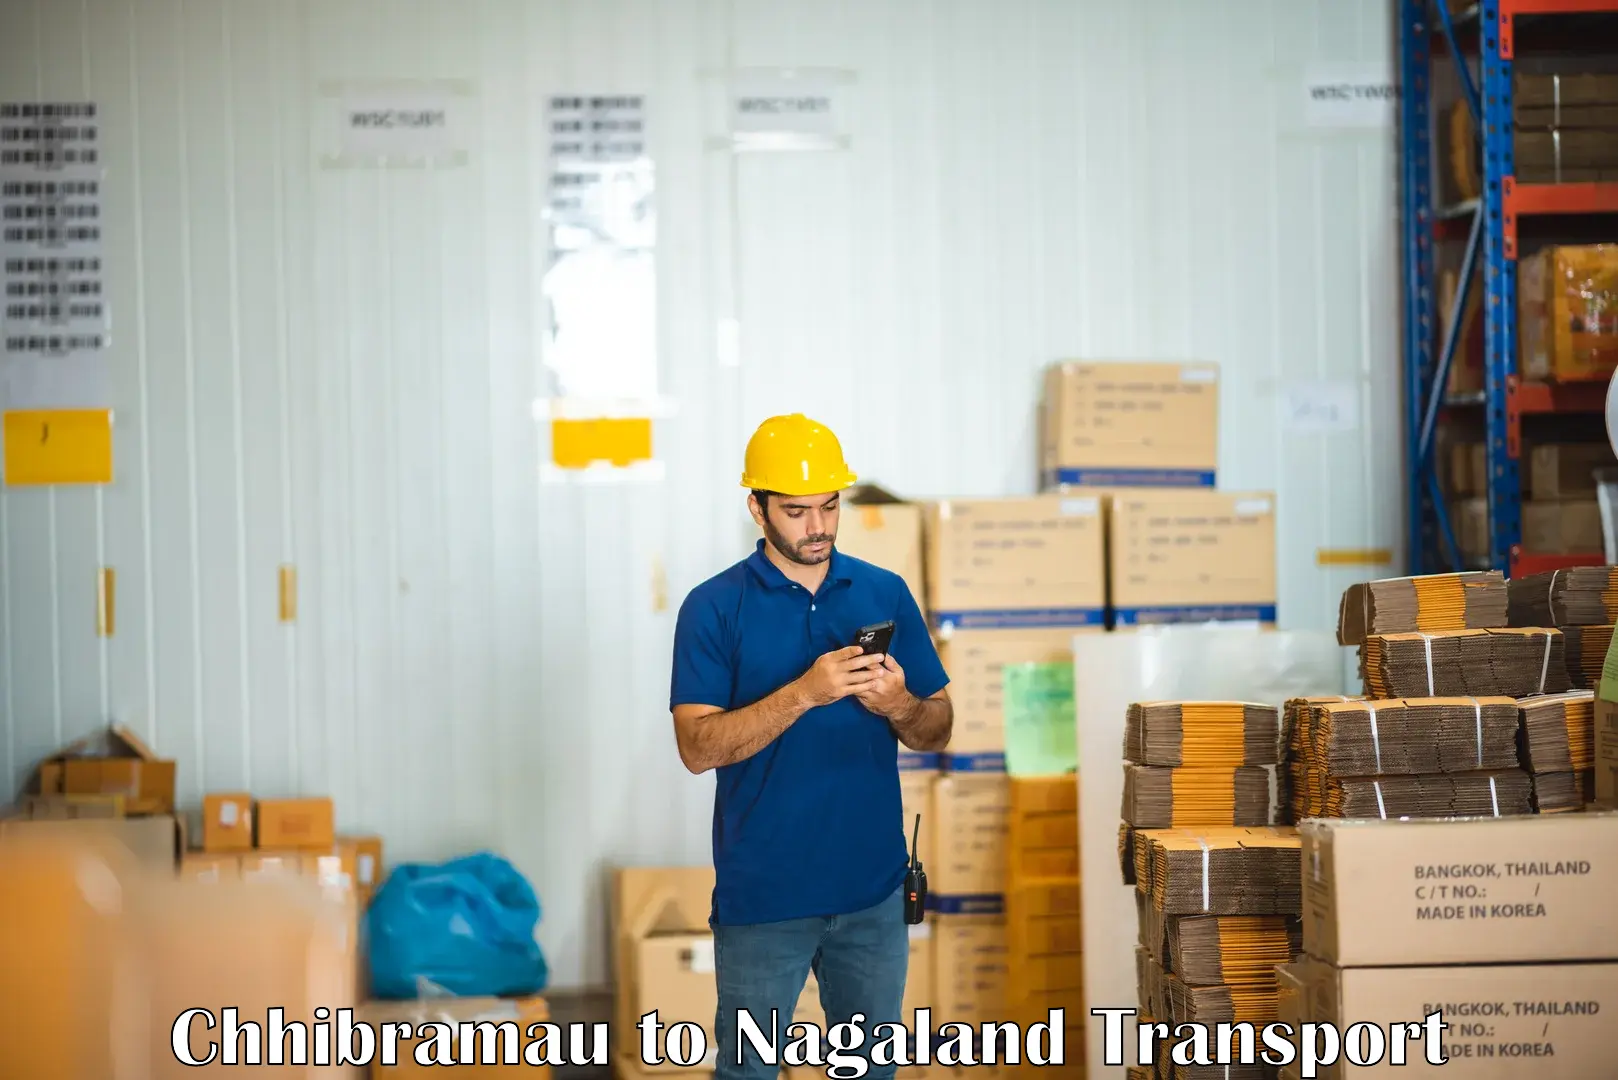 Furniture transport service Chhibramau to Nagaland